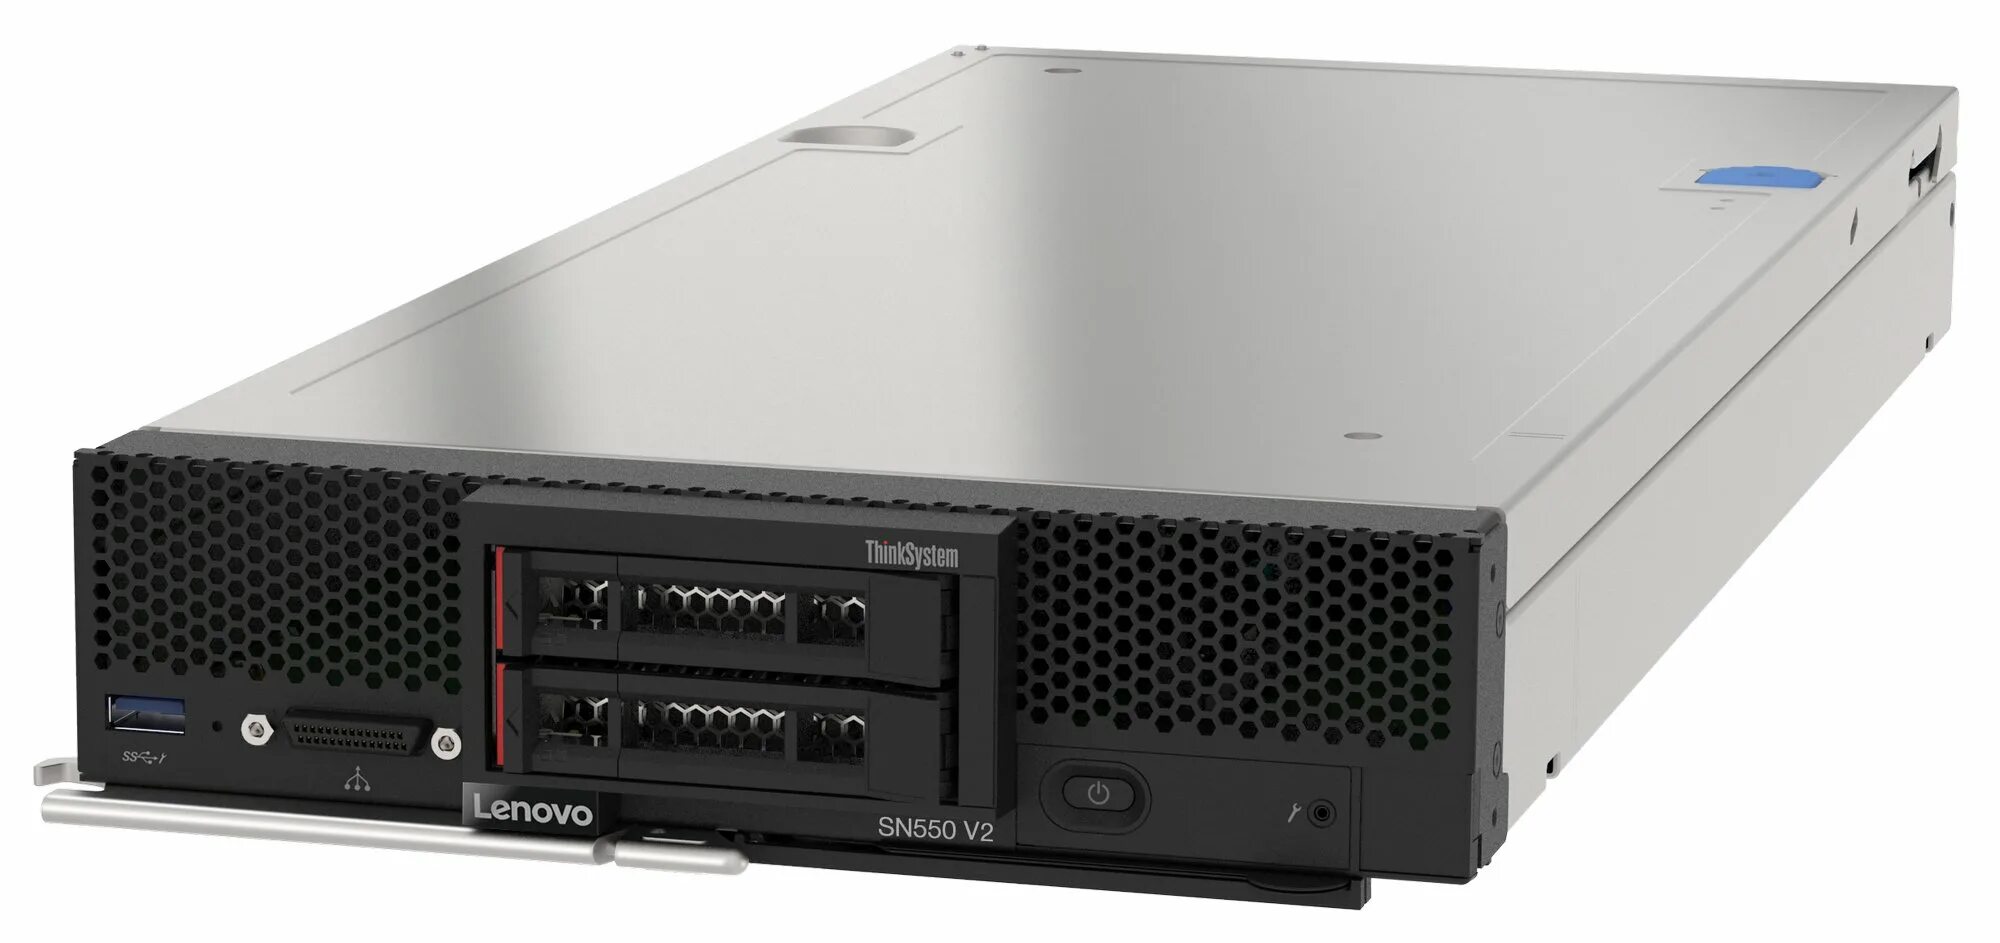 Lenovo server. Lenovo THINKSYSTEM sn550. THINKSYSTEM sn550 7x16. Lenovo THINKSYSTEM sr550 550. Lenovo THINKSYSTEM sr650 v2 Server.